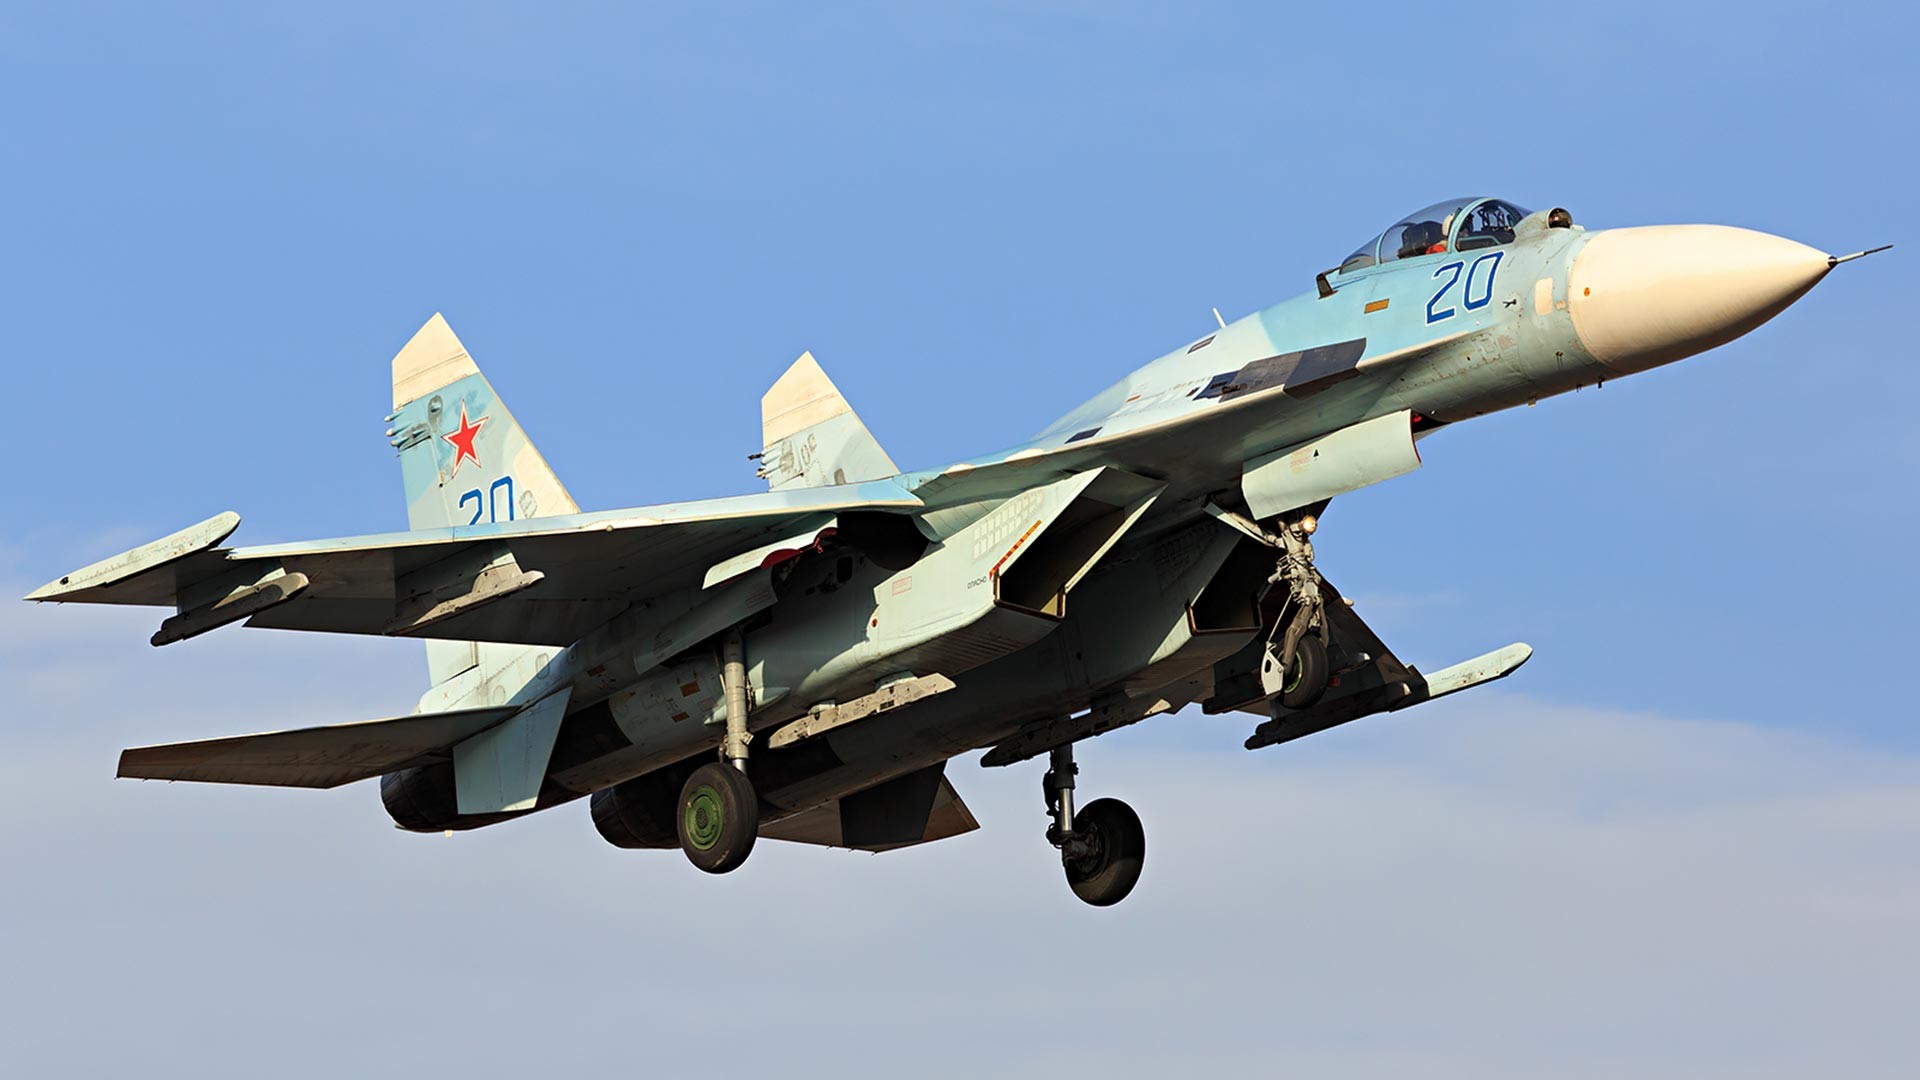 ロシア軍 戦闘機 スホーイ27 写真資料集「Sukhoi Su-27」 - 洋書